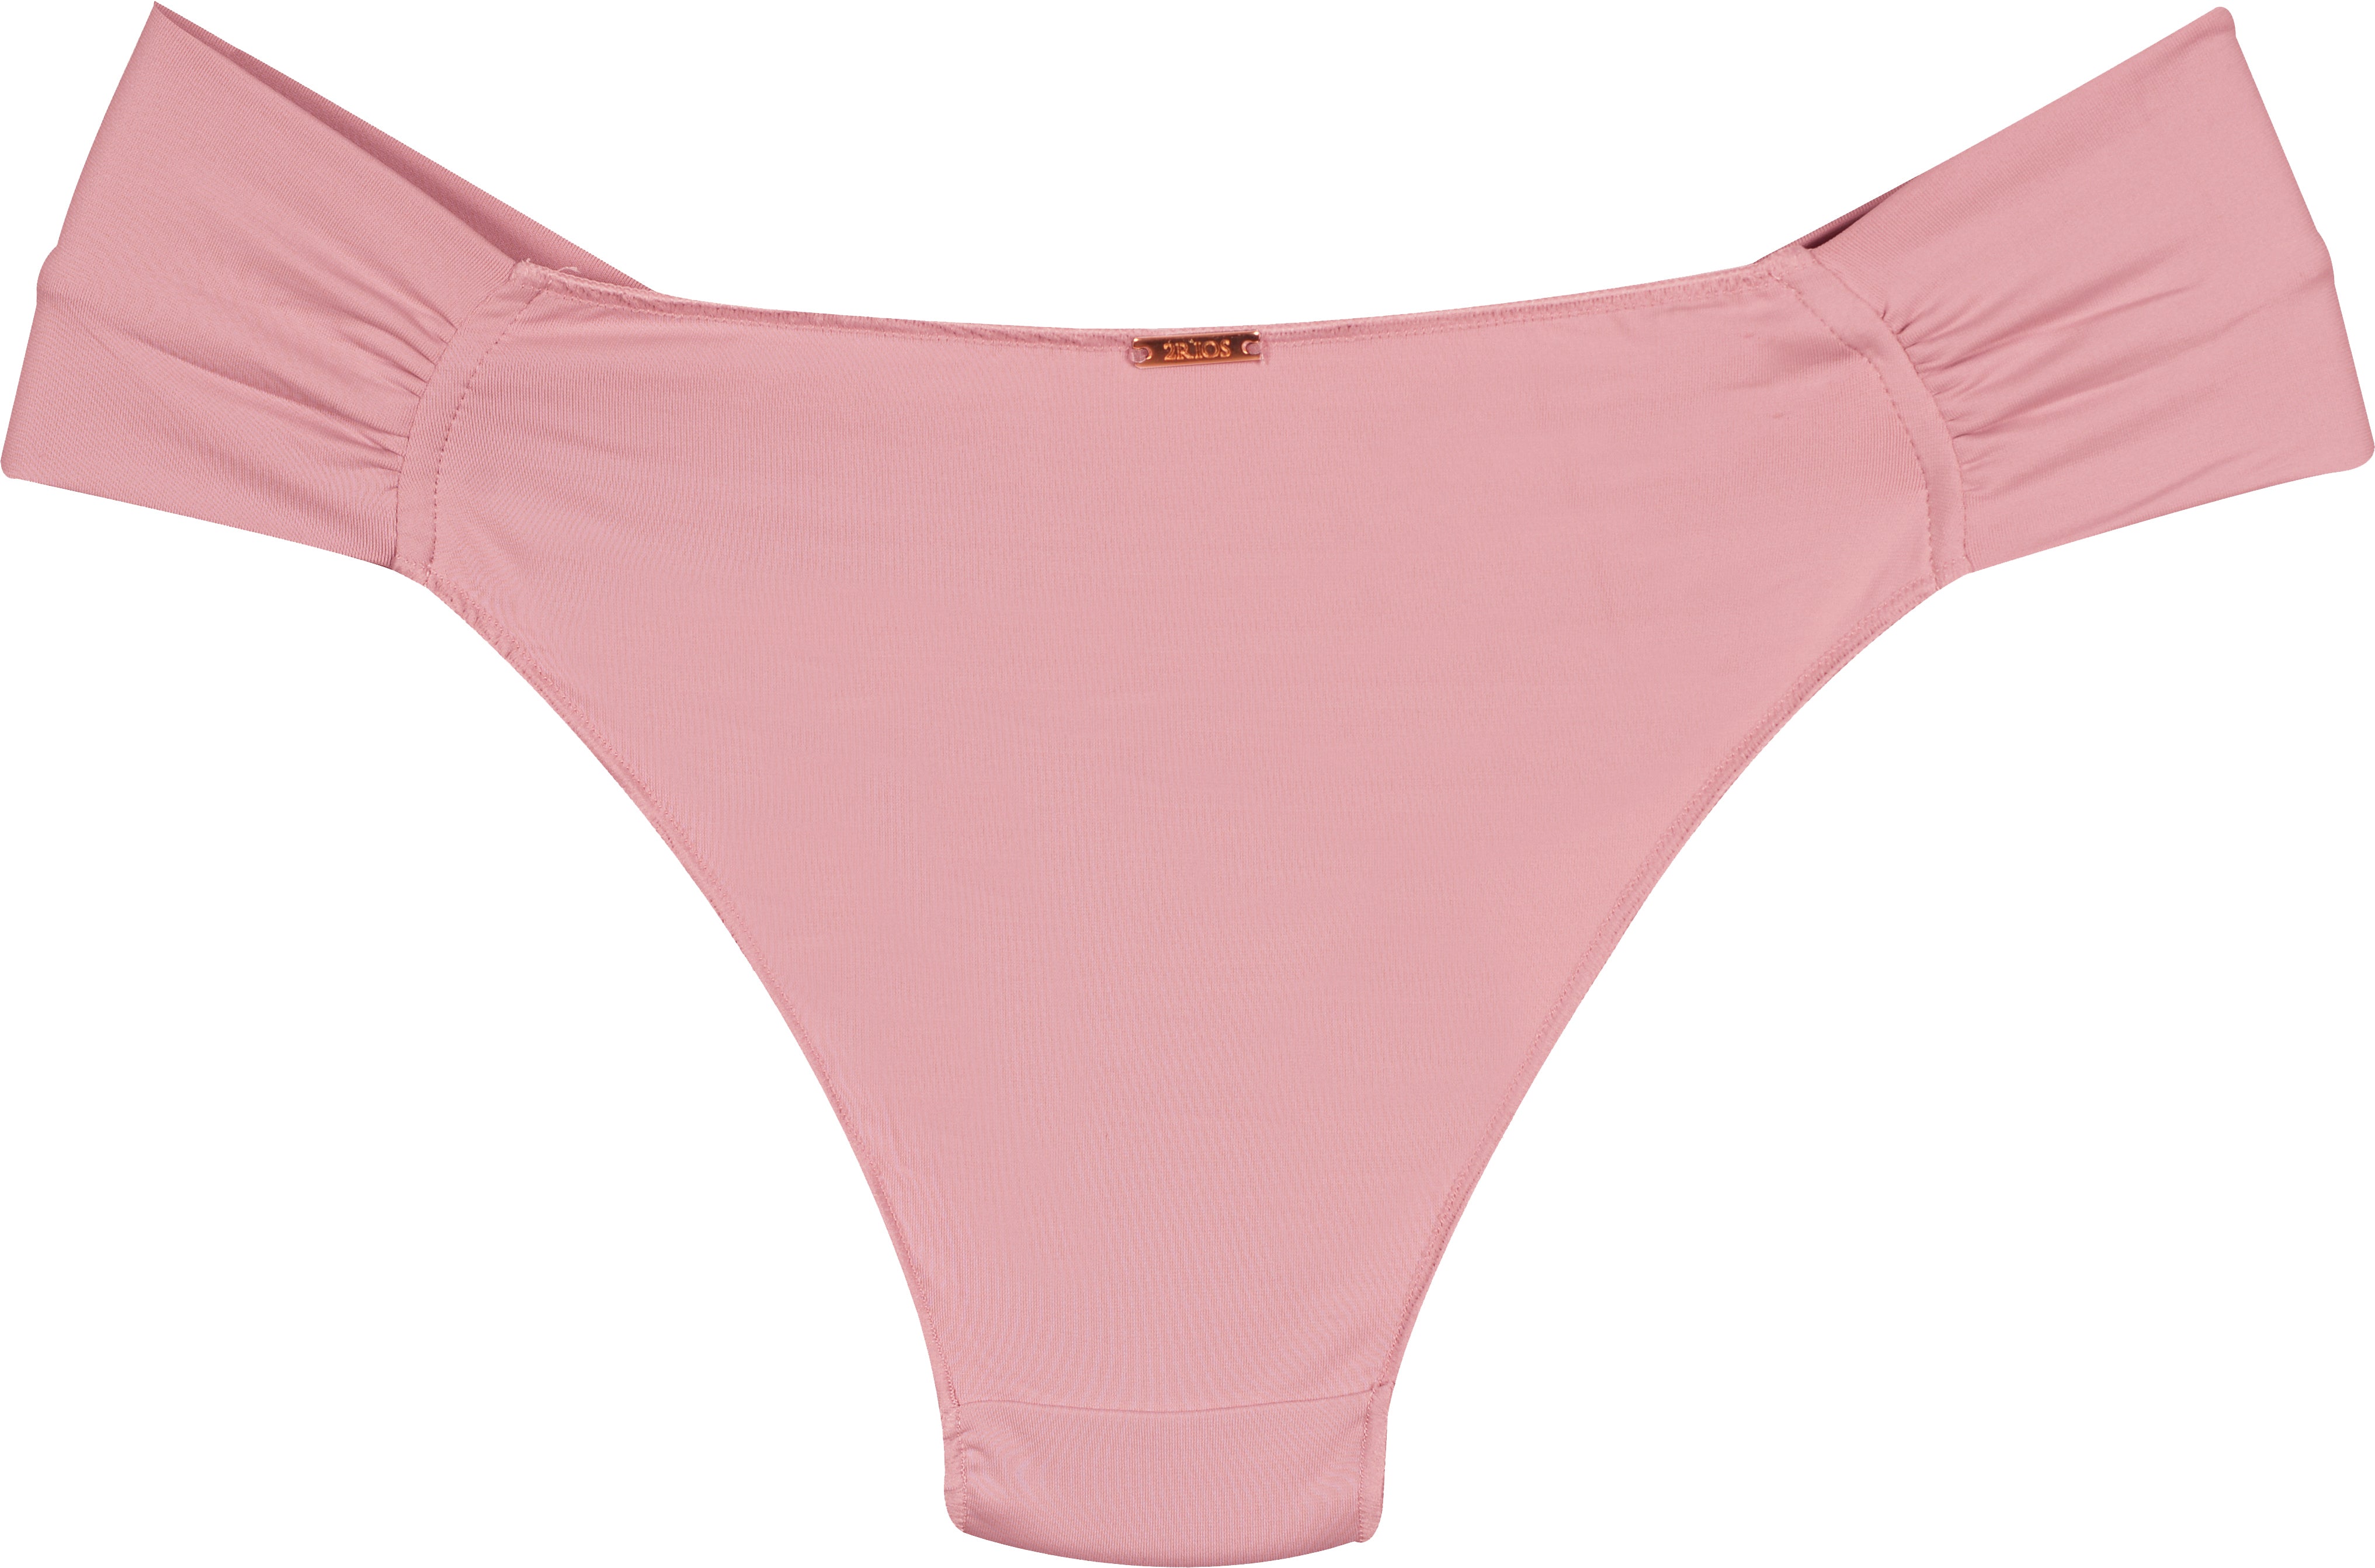 Bikini Panty Narrow Sides - 35840